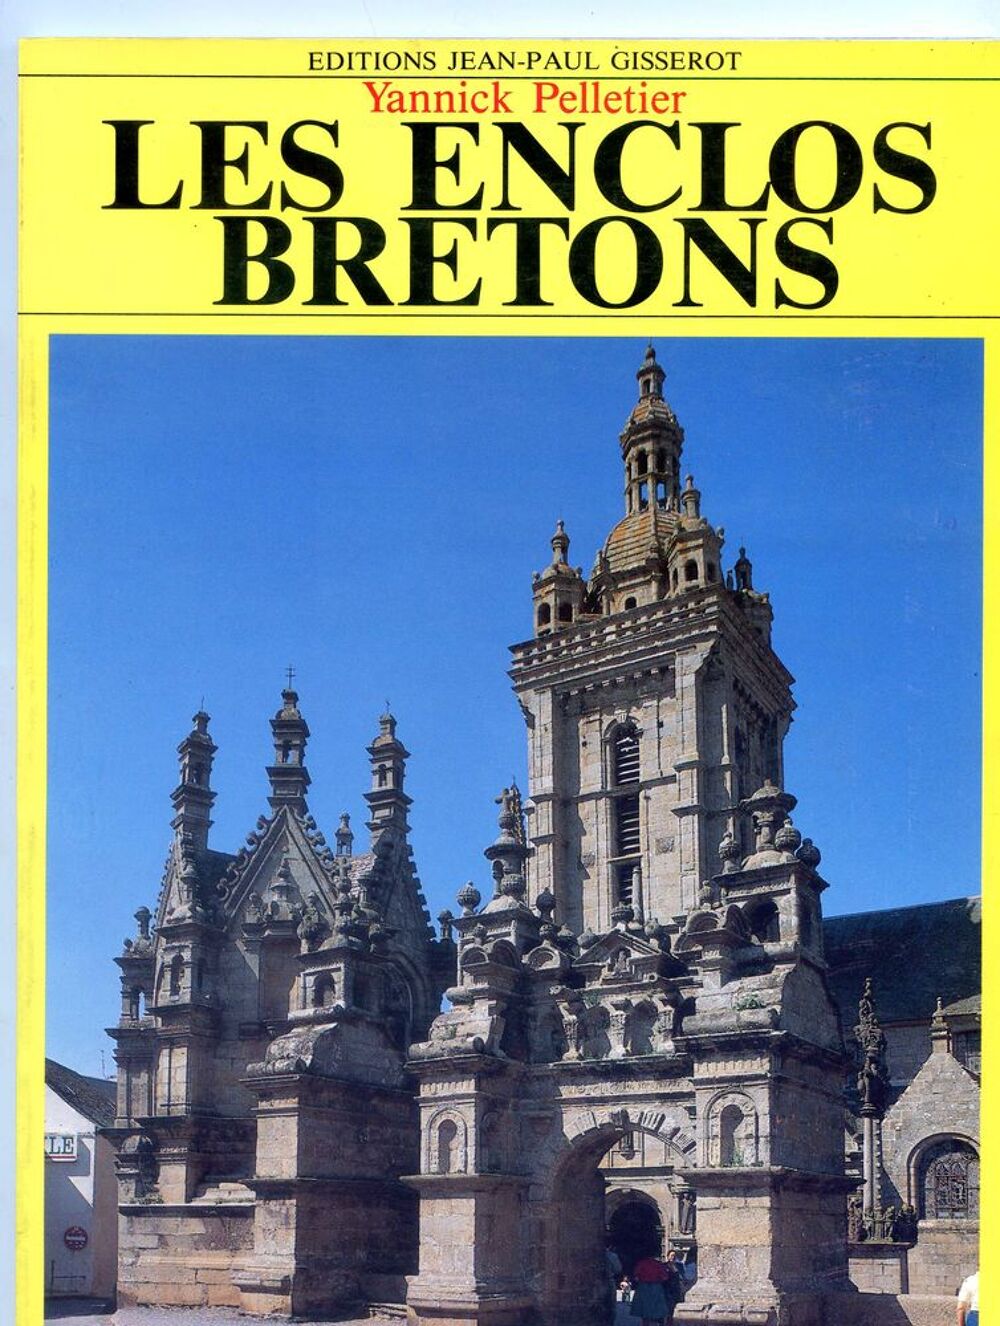 Les enclos bretons - Yannick Pelletier Livres et BD